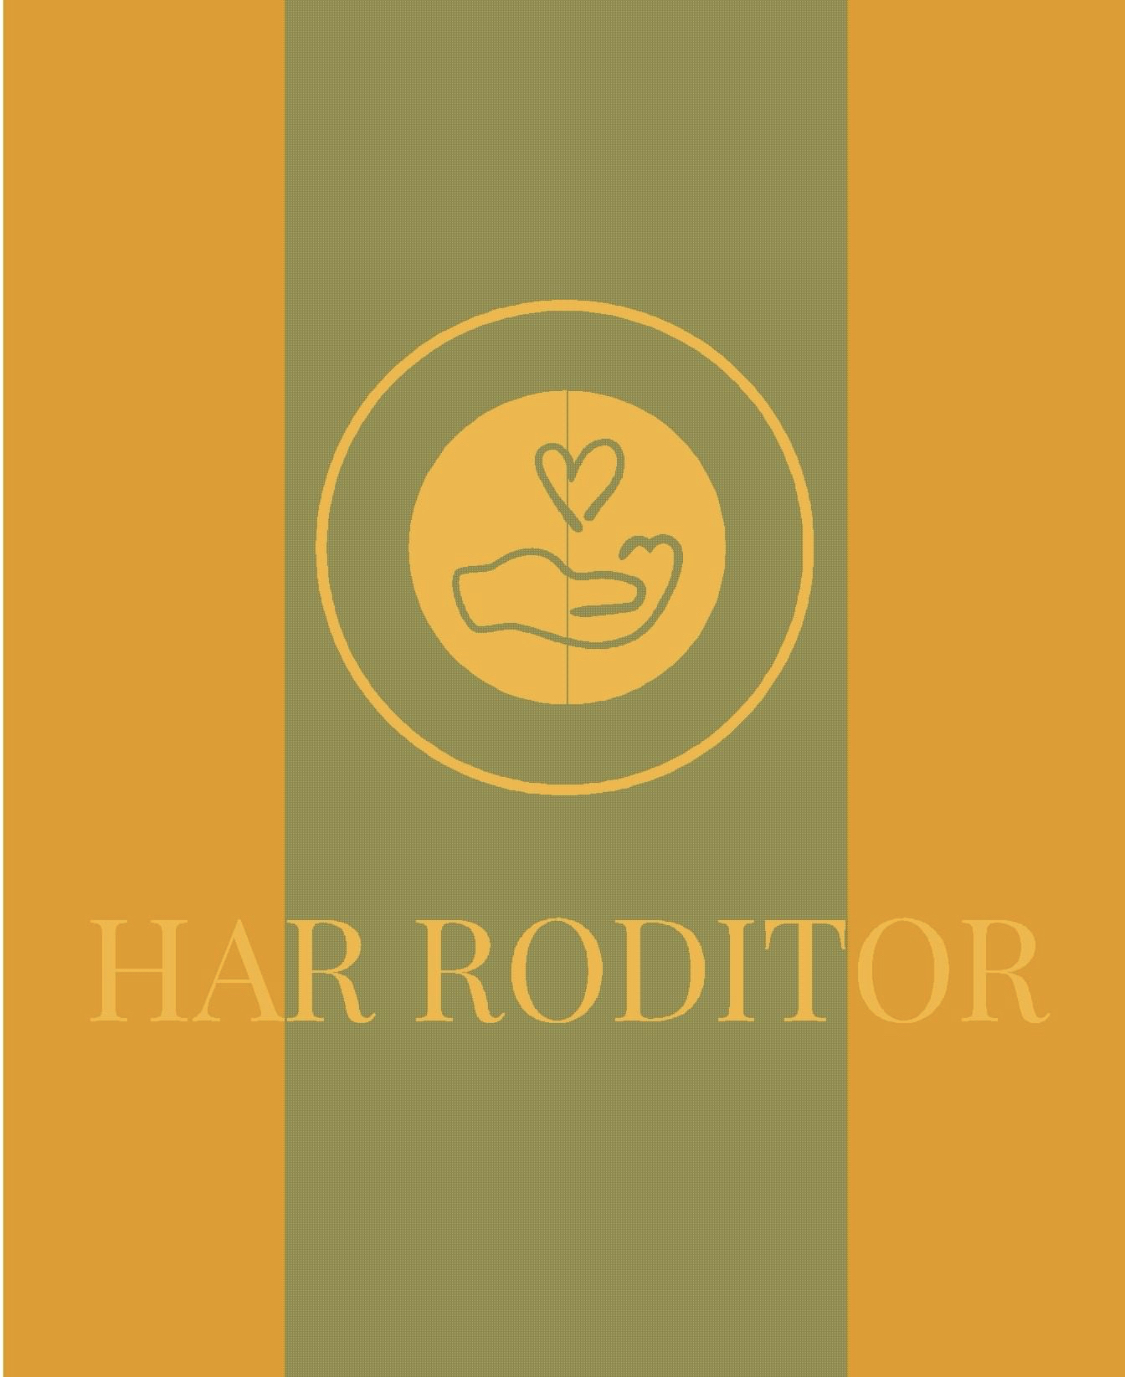 Asociatia Har Roditor logo